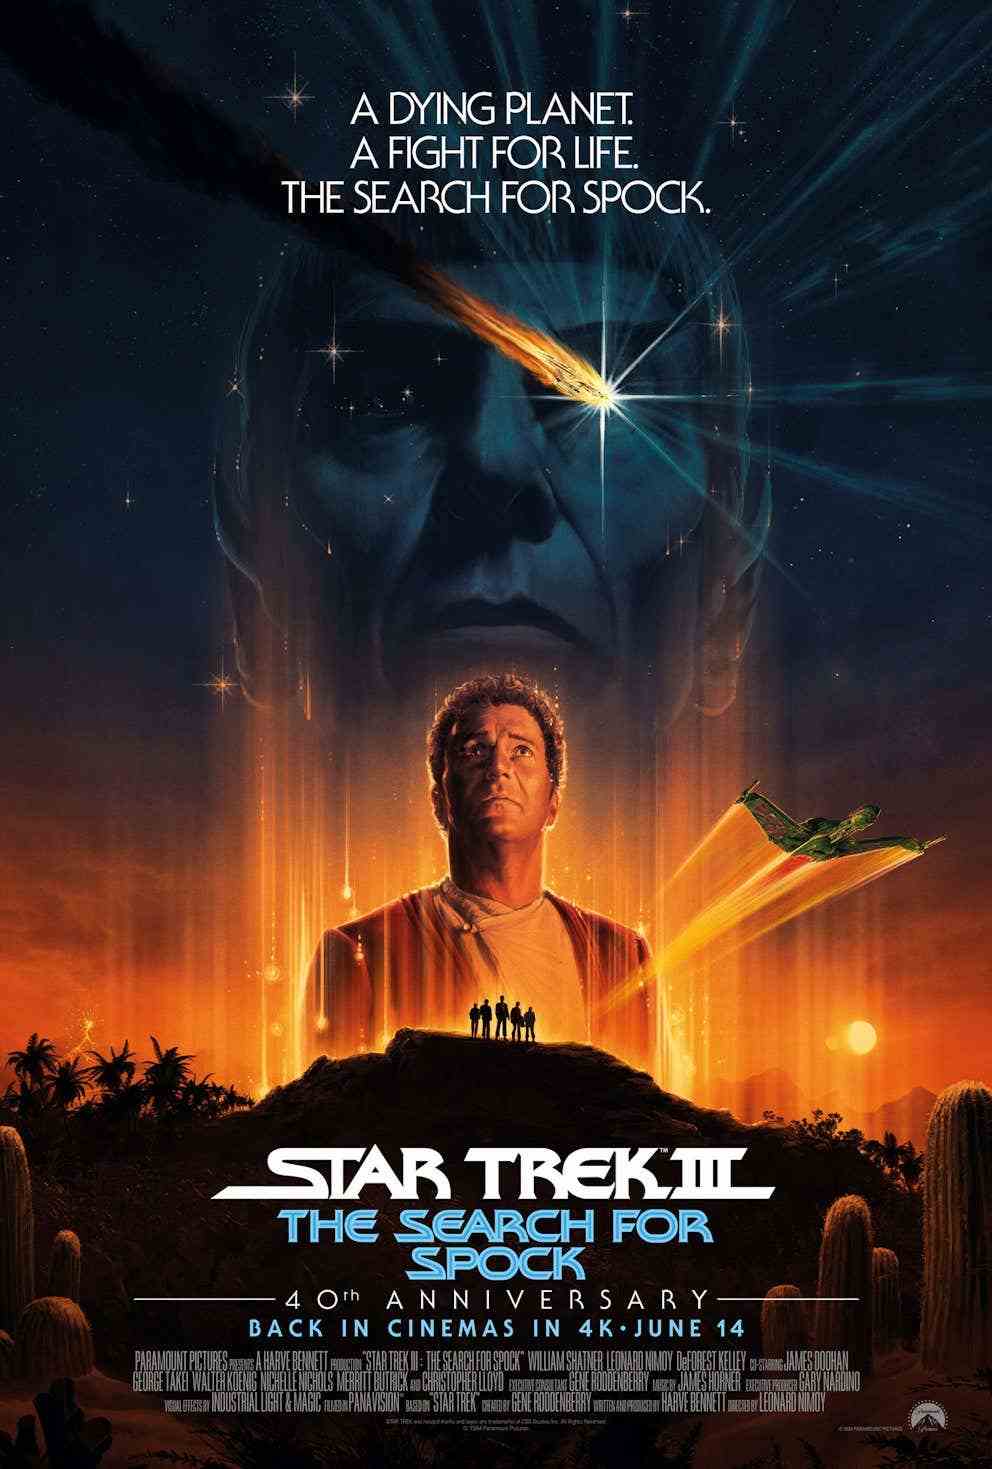 Star Trek 3 Sinemalara Dönüş Yolunu Buldu başlıklı makale için resim